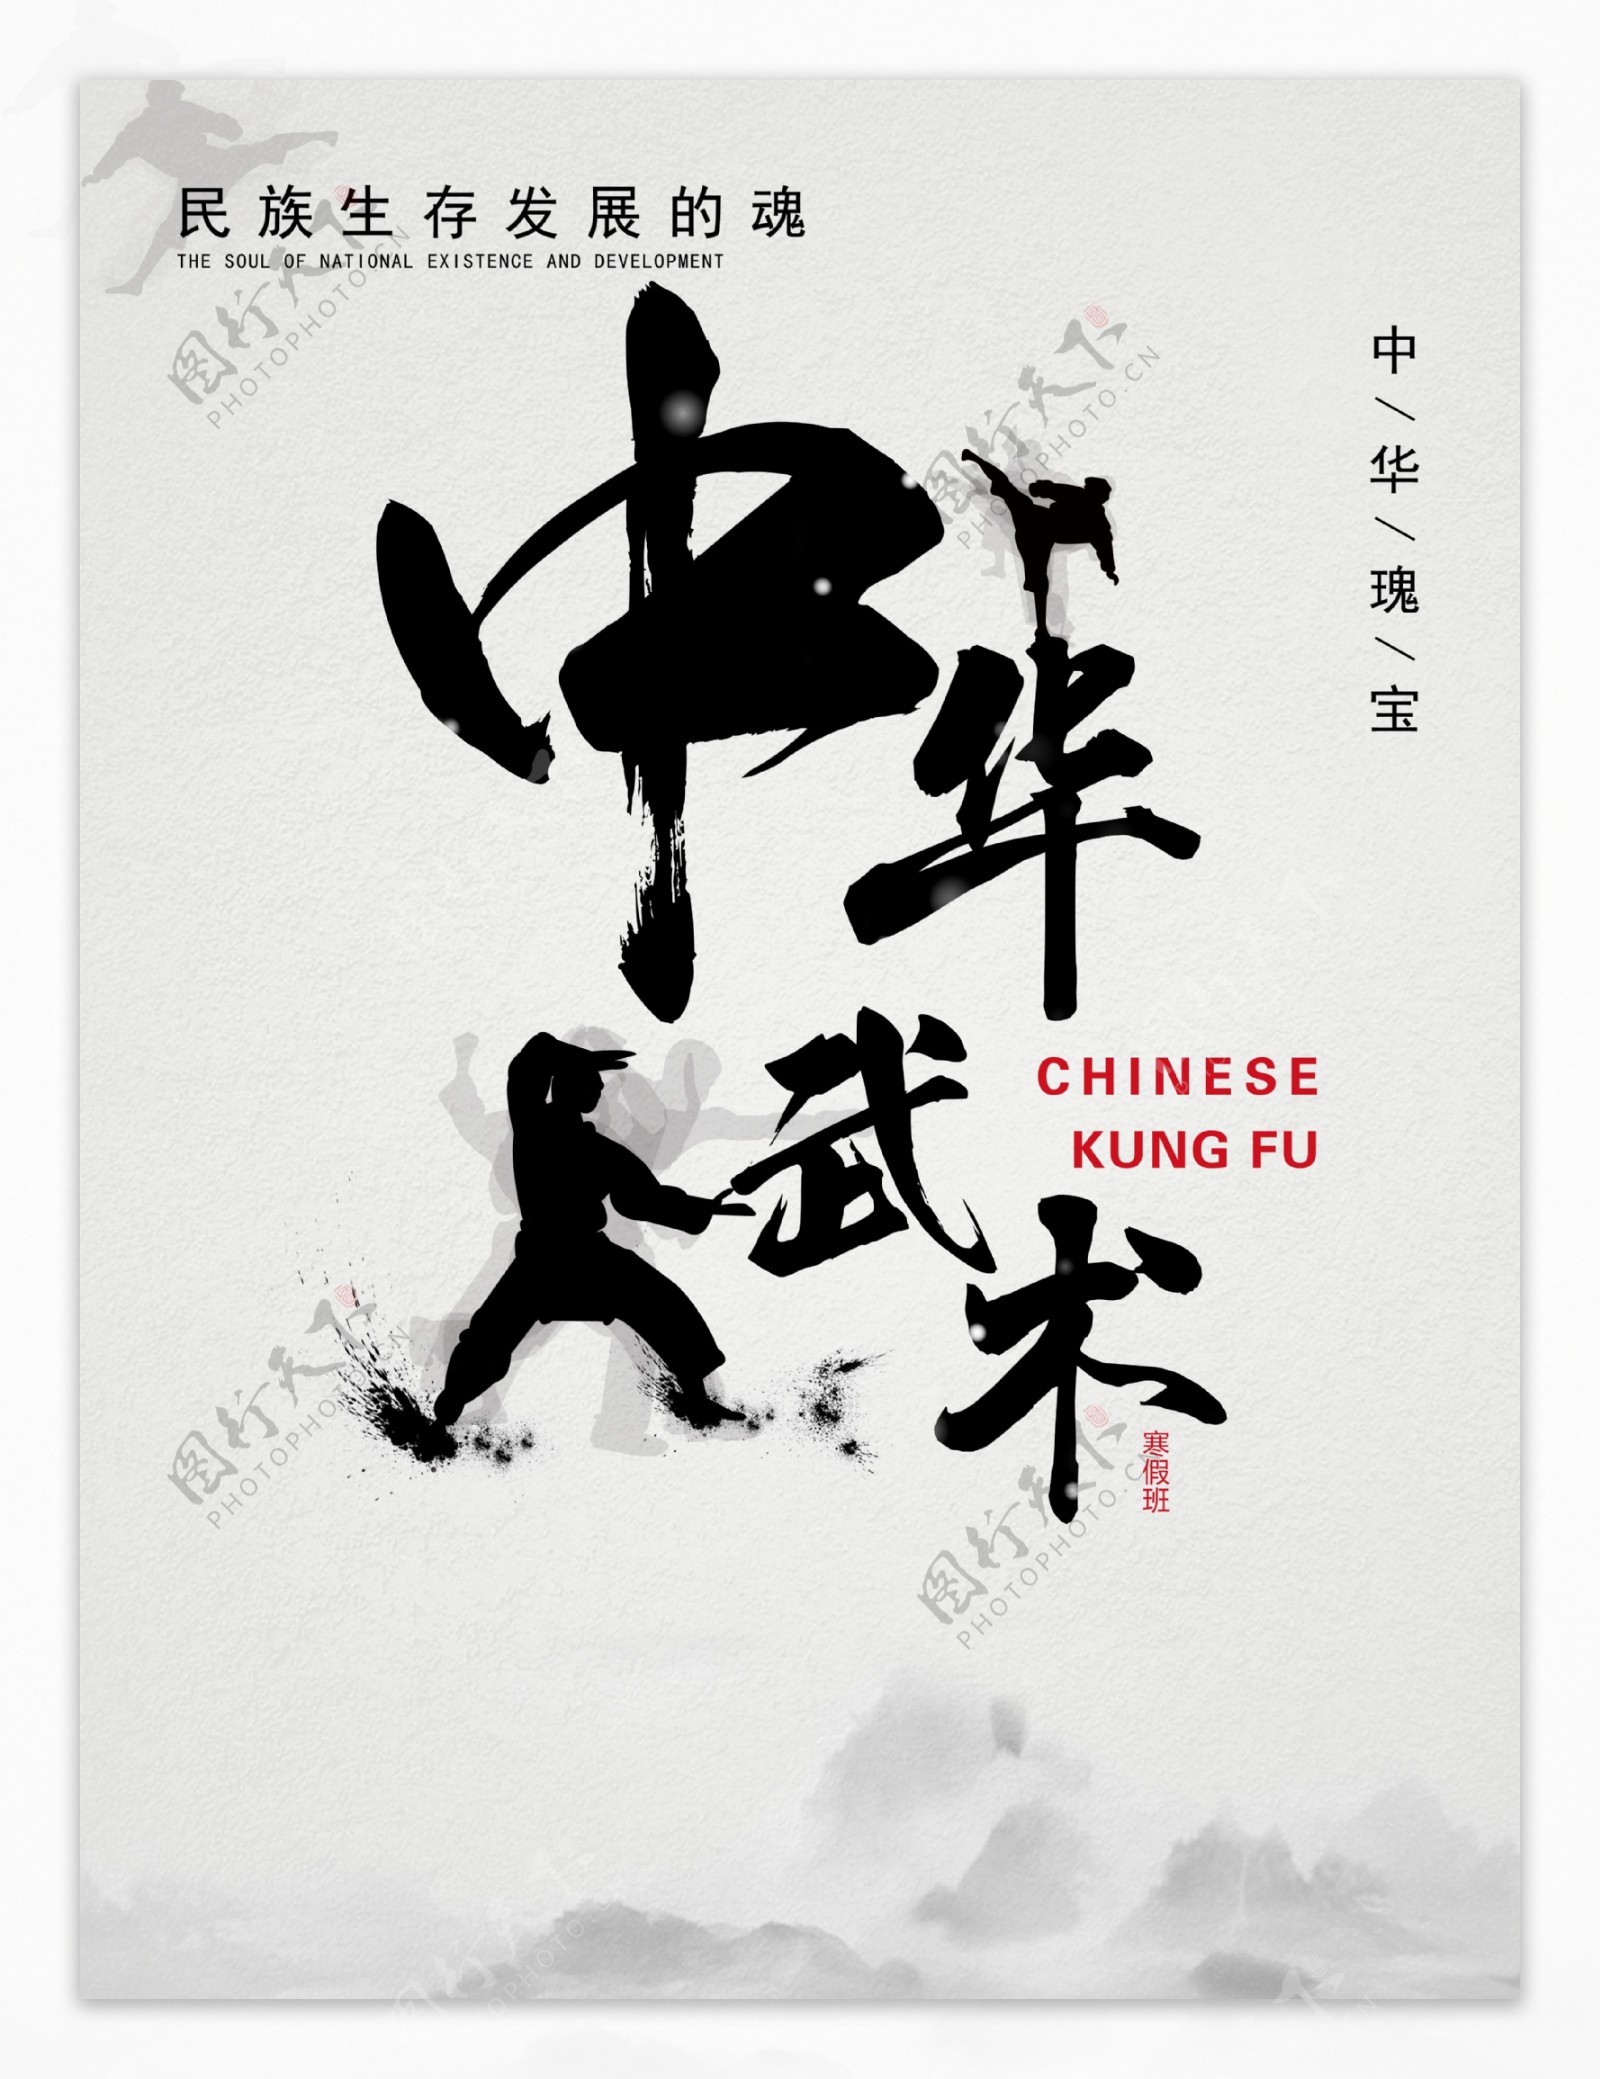 中国风中国武术促销海报